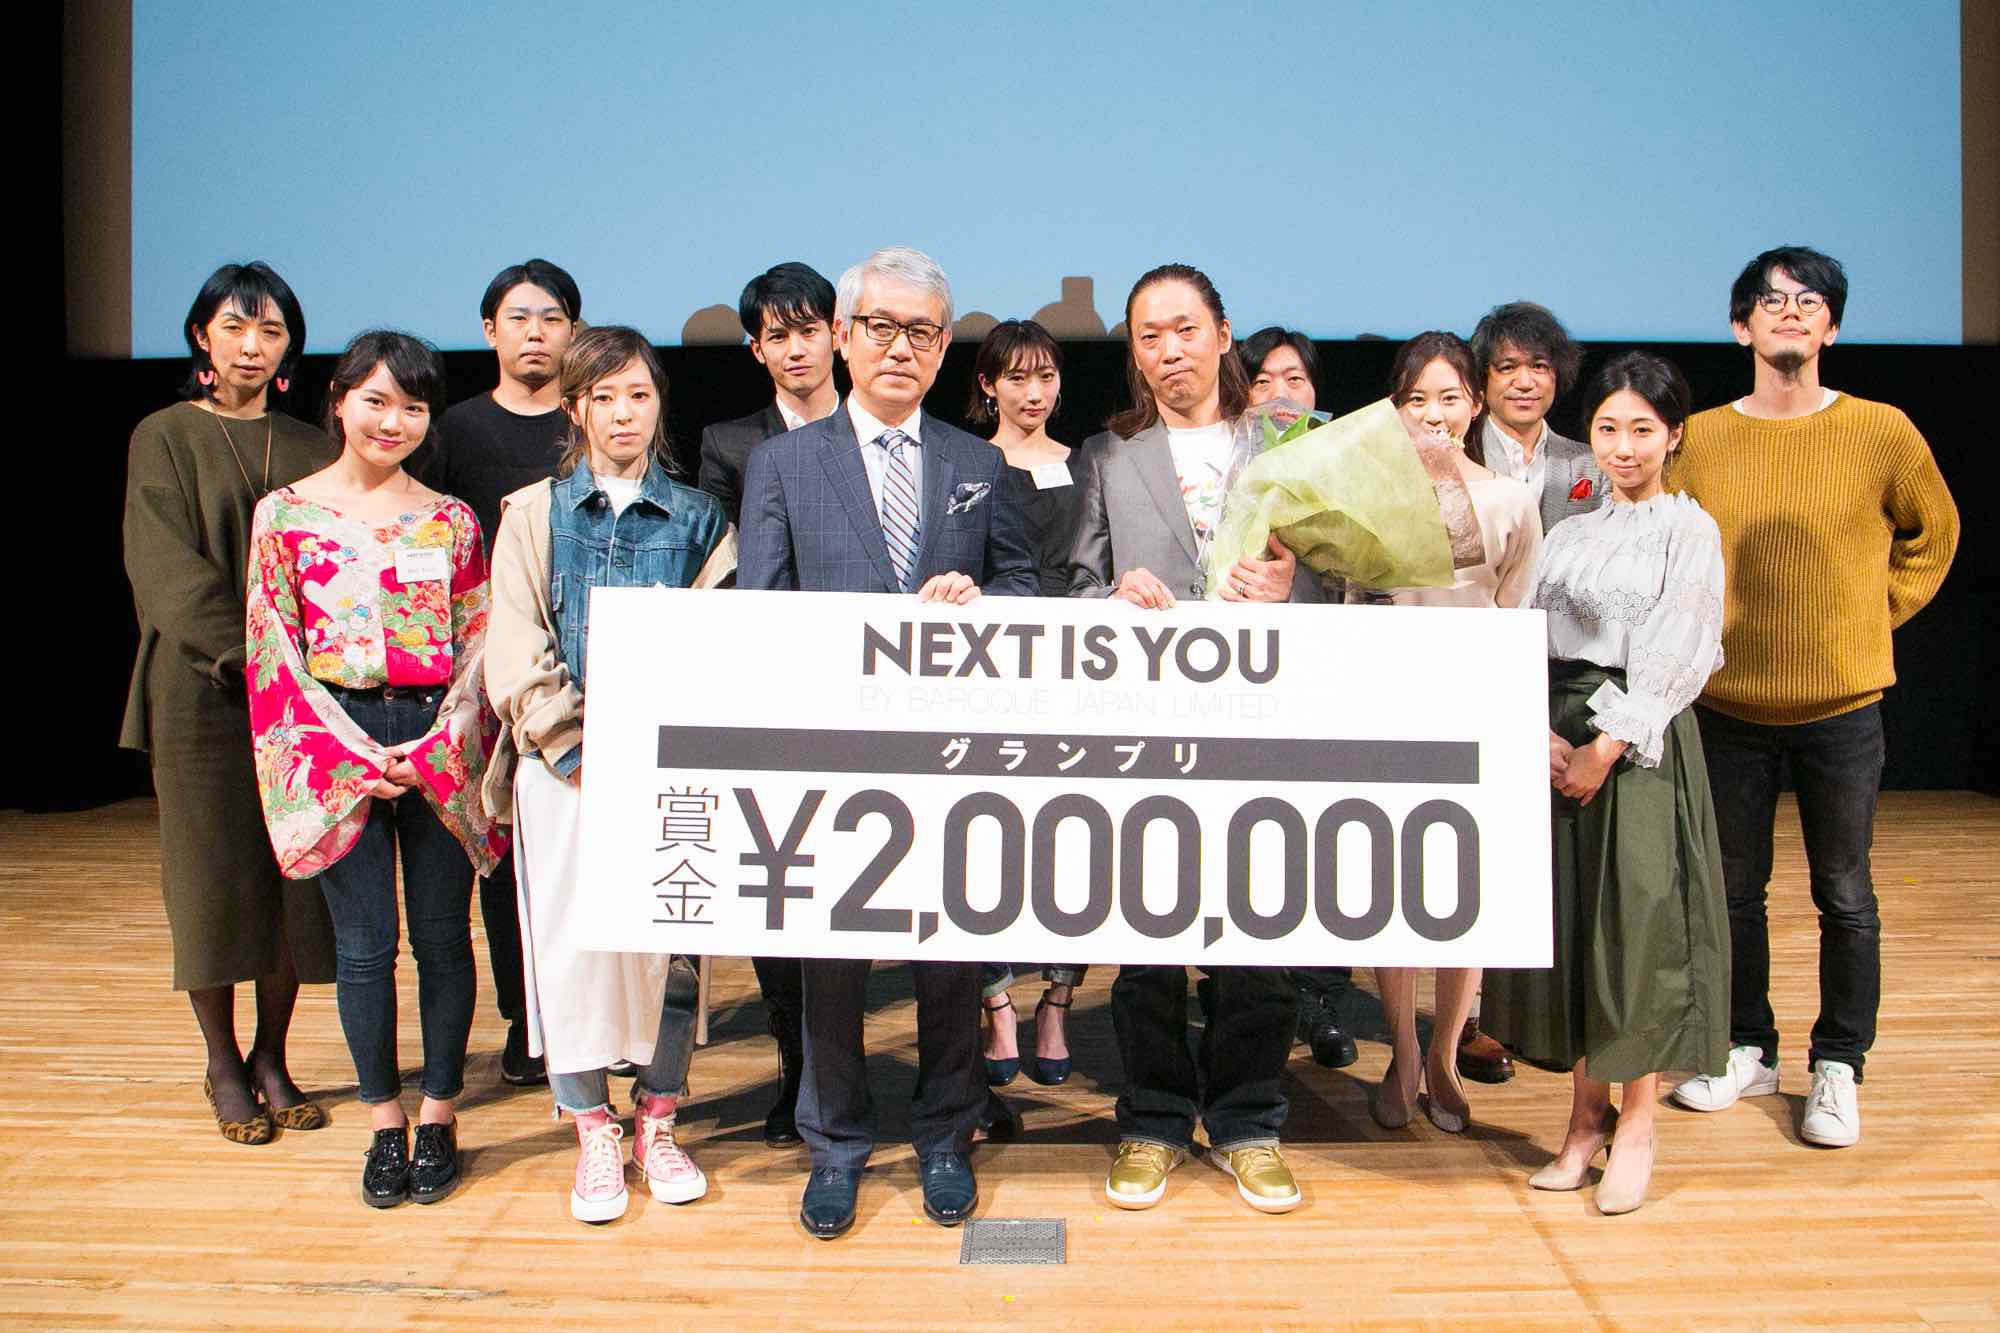 新規事業コンテスト Next Is You ネクスト イズ ユー のグランプリは オタク市場への参入 Shibuya系とakiba系の融合 に決定 Ready To Fashion Mag